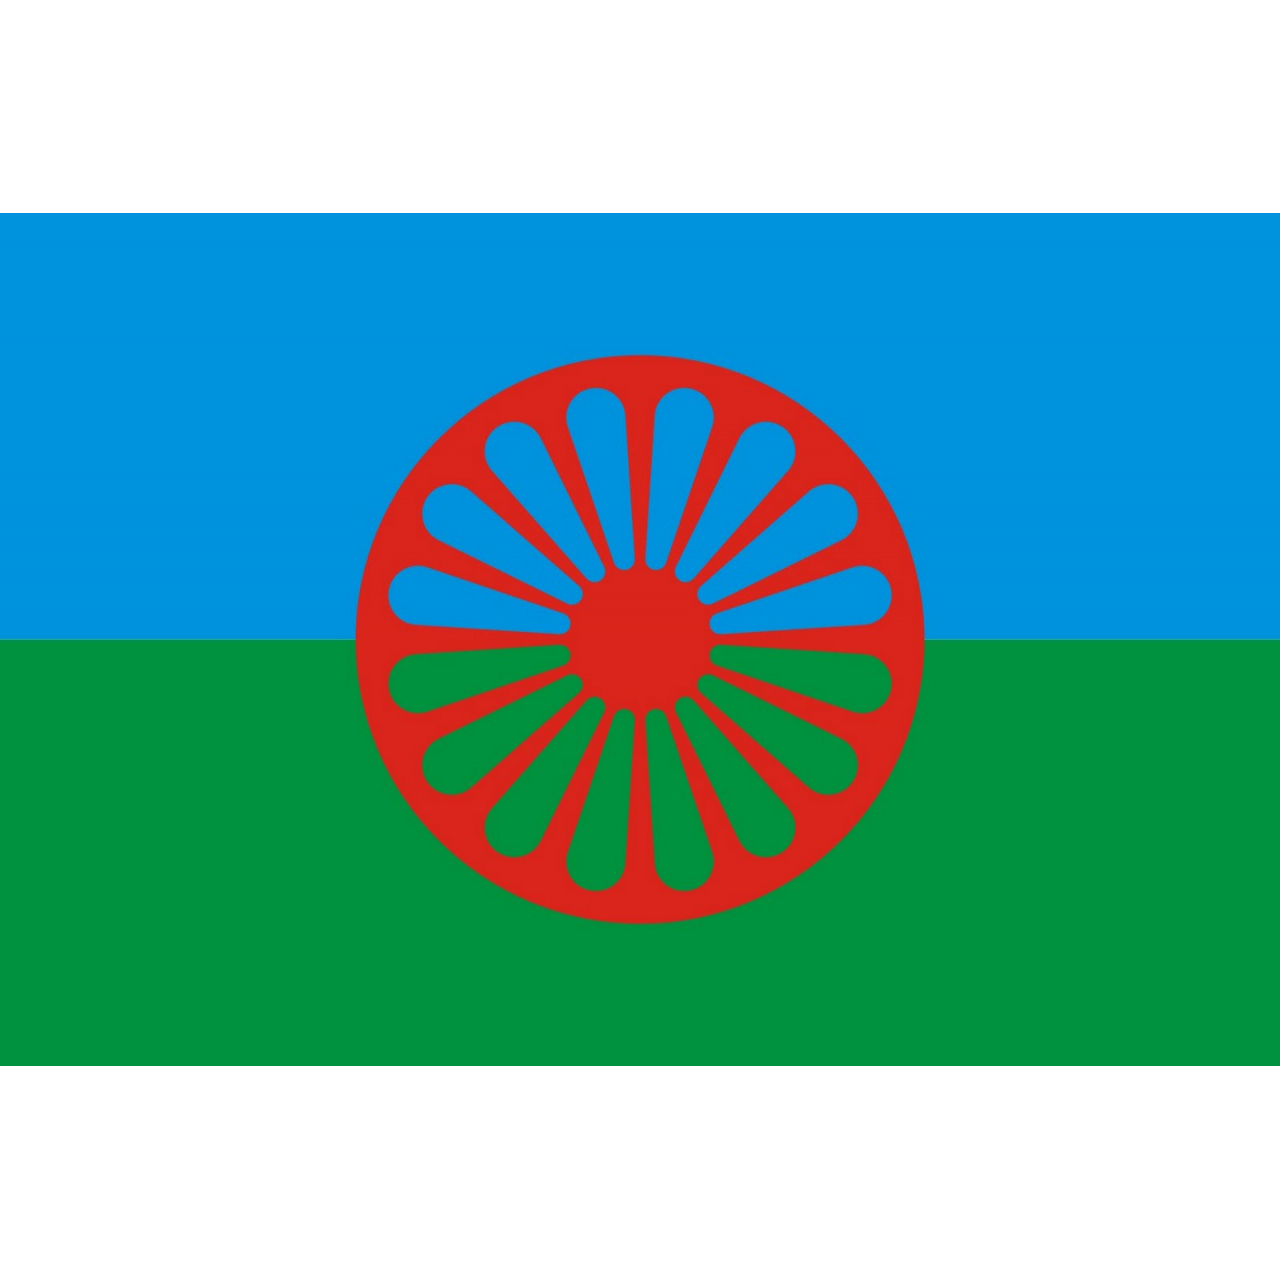 Vlajka romská 240x150 cm - barevná